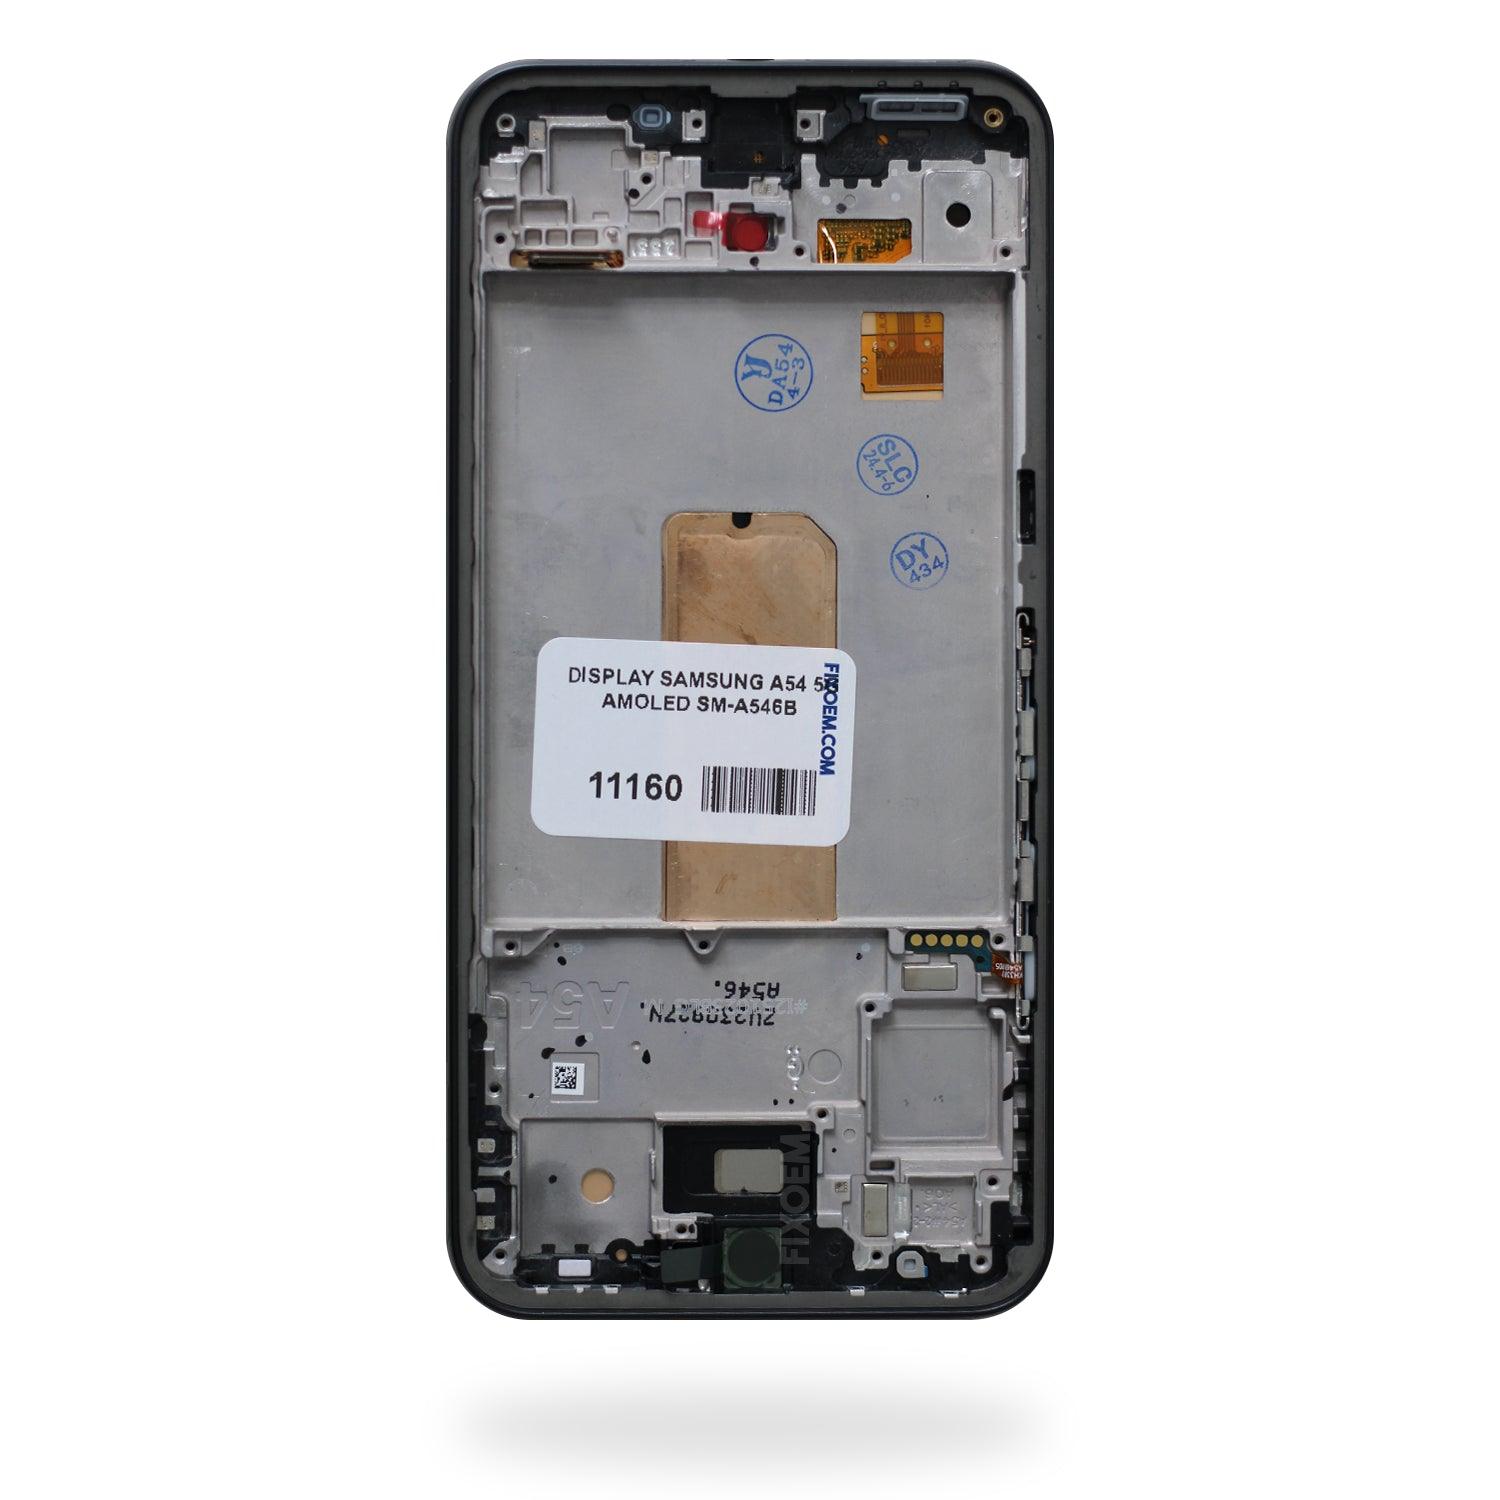 Display Samsung A54 5G Amoled Sm-a546b a solo $ 730.00 Refaccion y puestos celulares, refurbish y microelectronica.- FixOEM